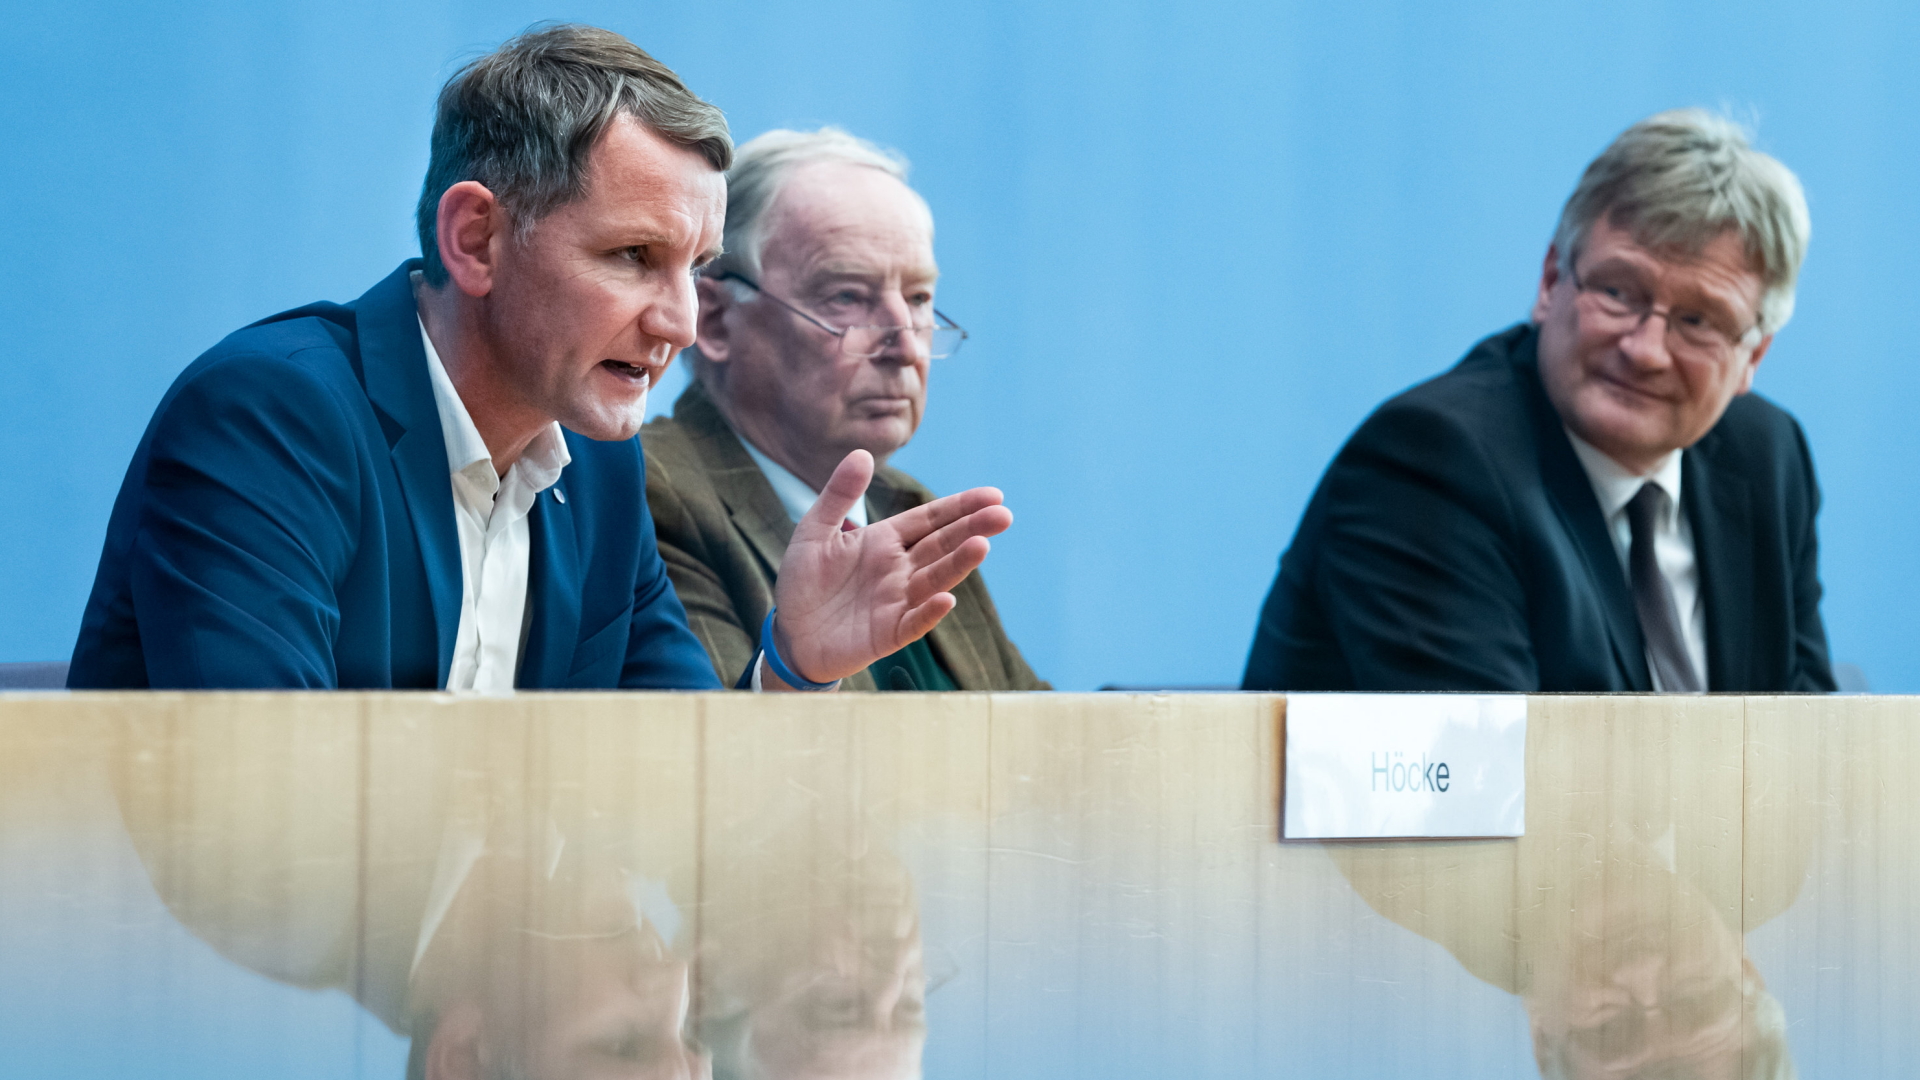 Jörg Meuthen (r) und Alexander Gauland (M) geben zusammen mit Björn Höcke, AfD-Fraktionschef in Thüringen, eine Pressekonferenz über den Ausgang der Landtagswahl in Thüringen in der Bundespressekonferenz (28.10.2019) | dpa